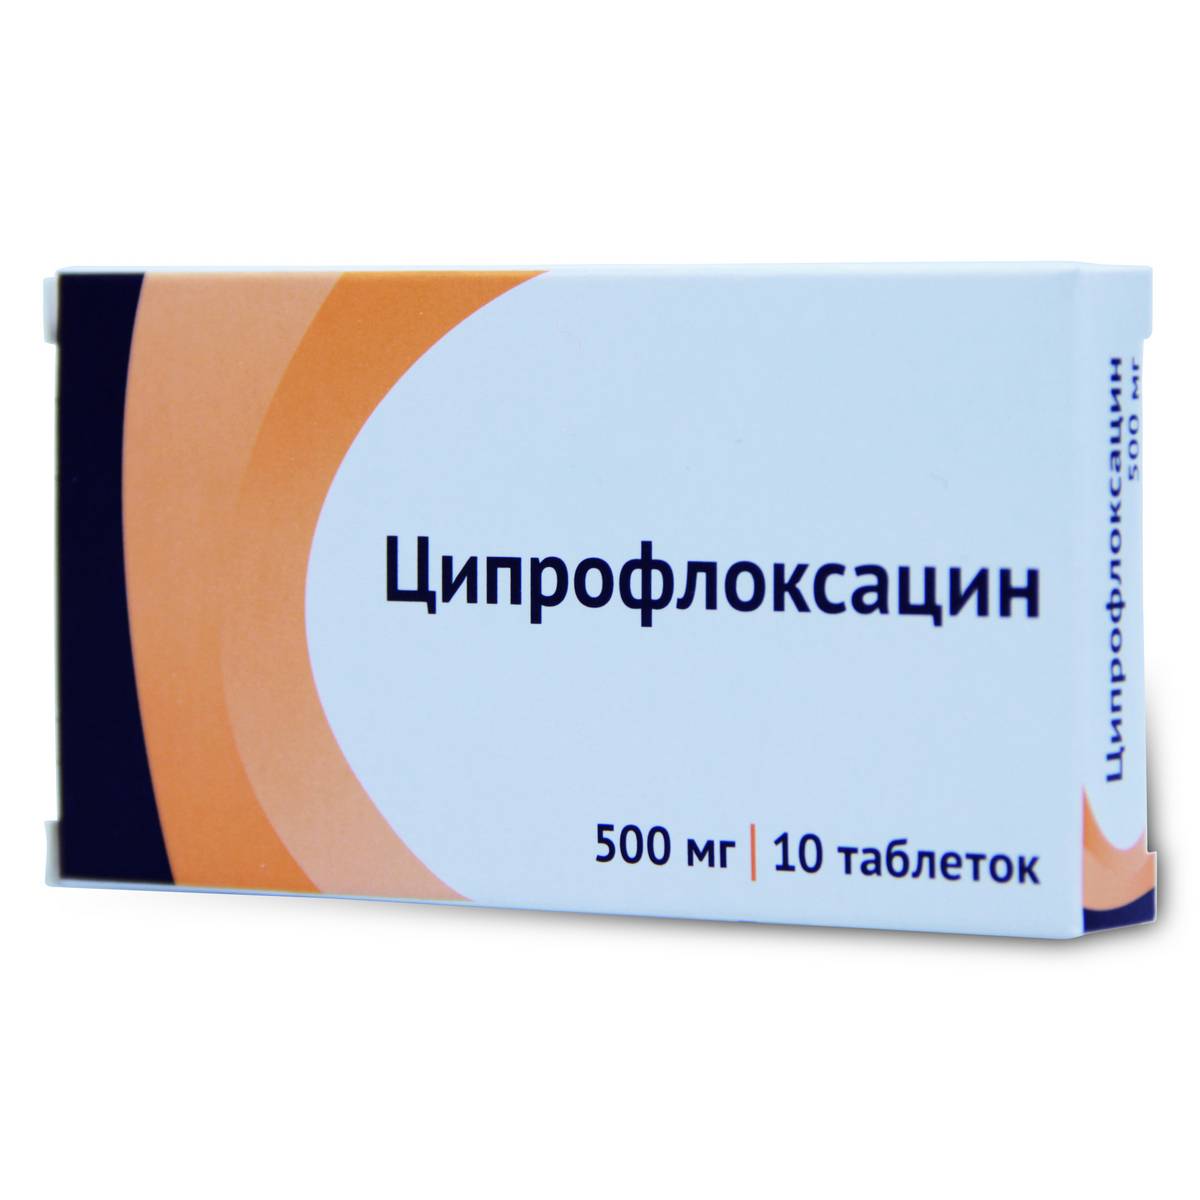 Моксифлоксацин аналоги. цены на аналоги в аптеках